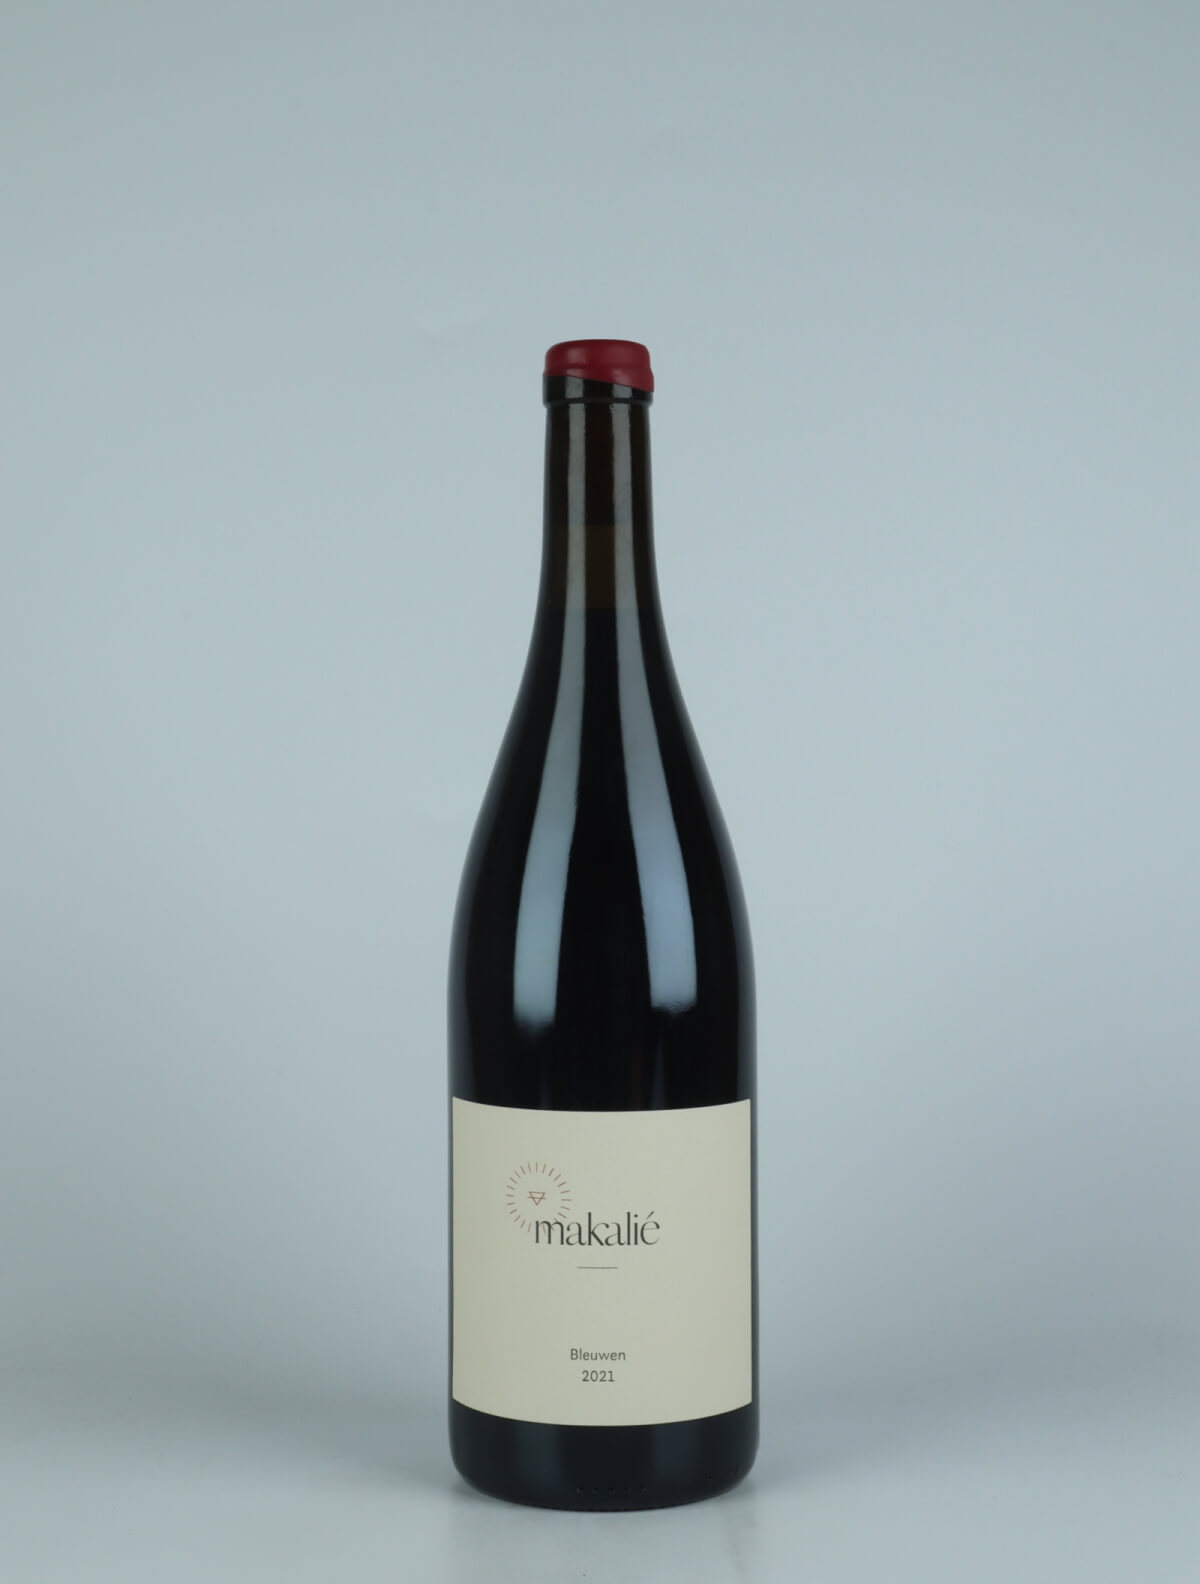 A bottle 2021 Bleuwen Red wine from Makalié, Baden in Germany